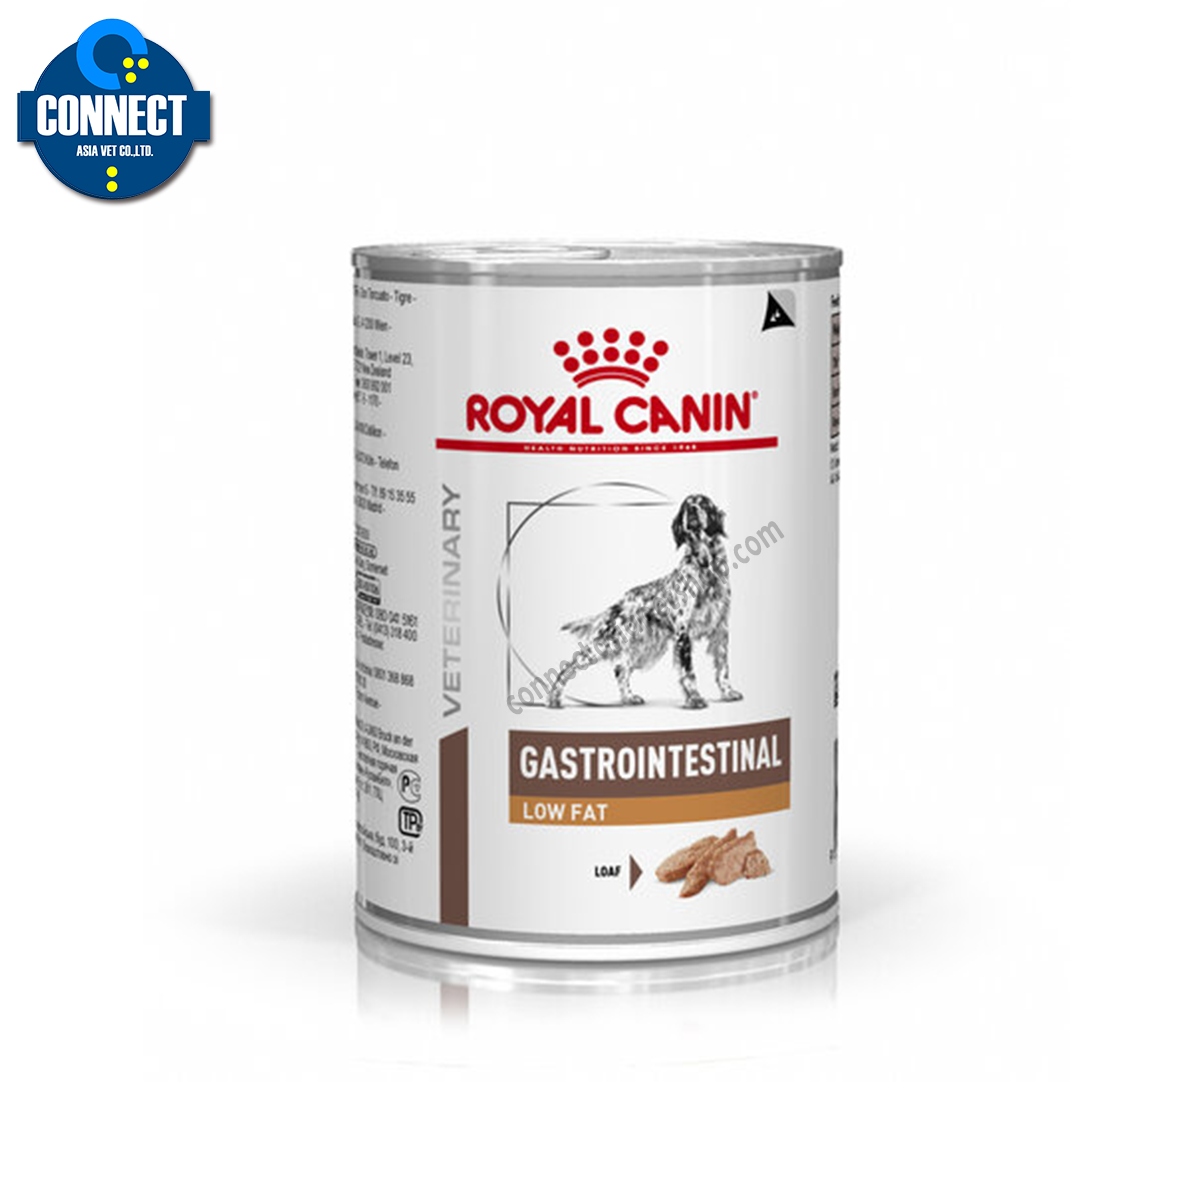 Royal Canin GASTROINTESTINAL LOW FAT สุนัขป่วยด้วยภาวะตับอ่อนอักเสบ ภาวะไขมันในเลือดสูง ขนาดกระป๋อง  410 กรัม (จำนวน 1 กระป๋อง)